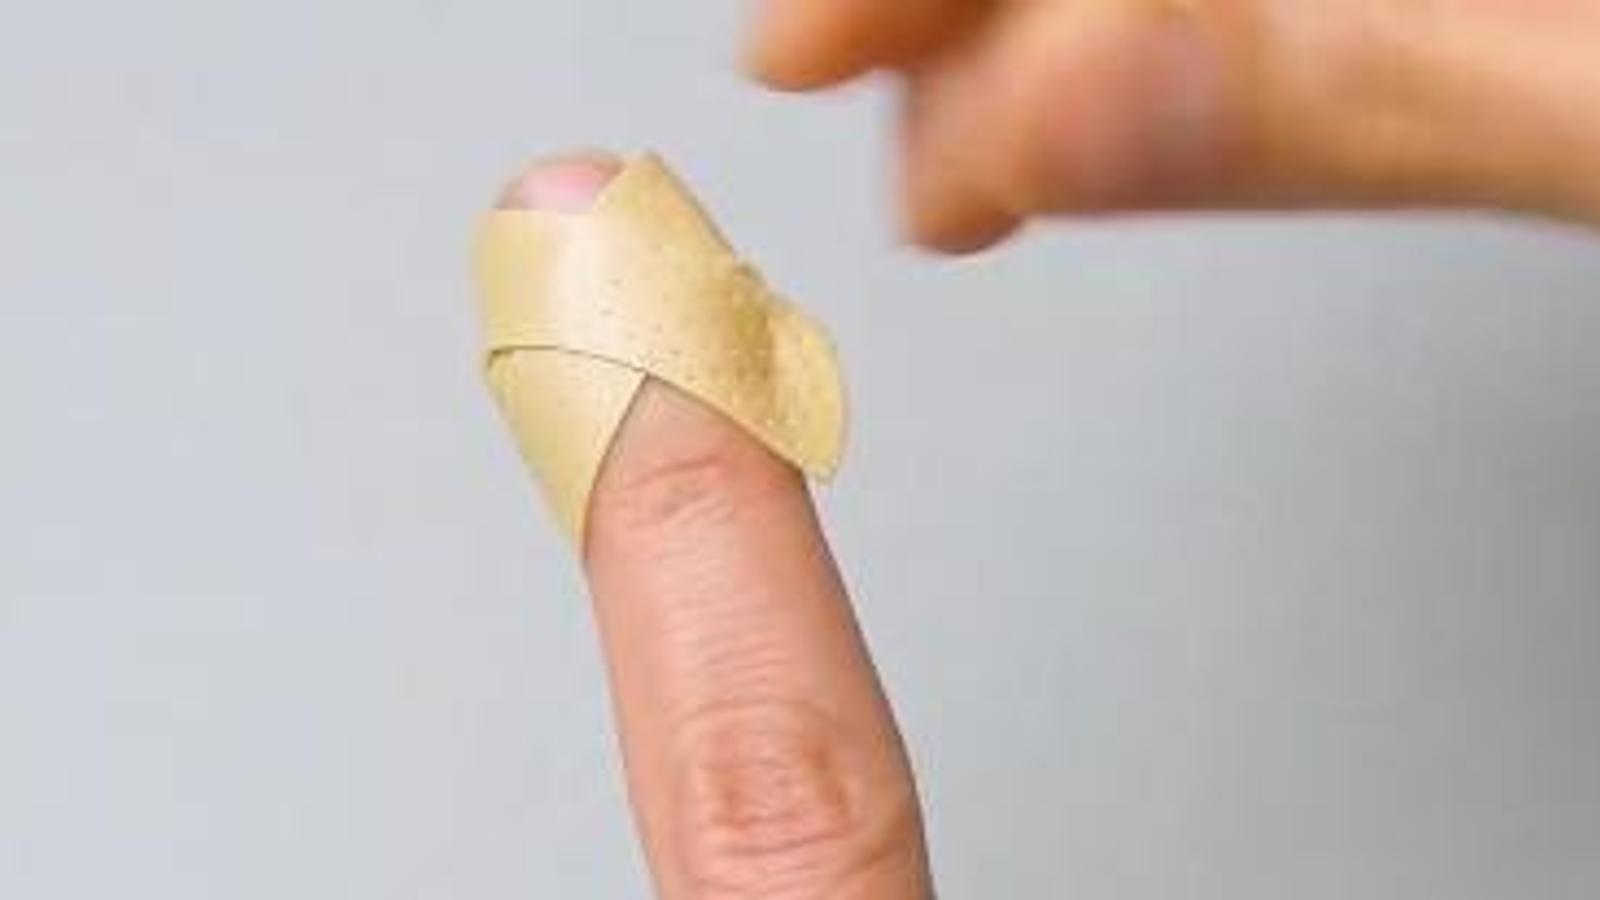 6 façons d'appliquer des bandages que vous devez absolument connaître